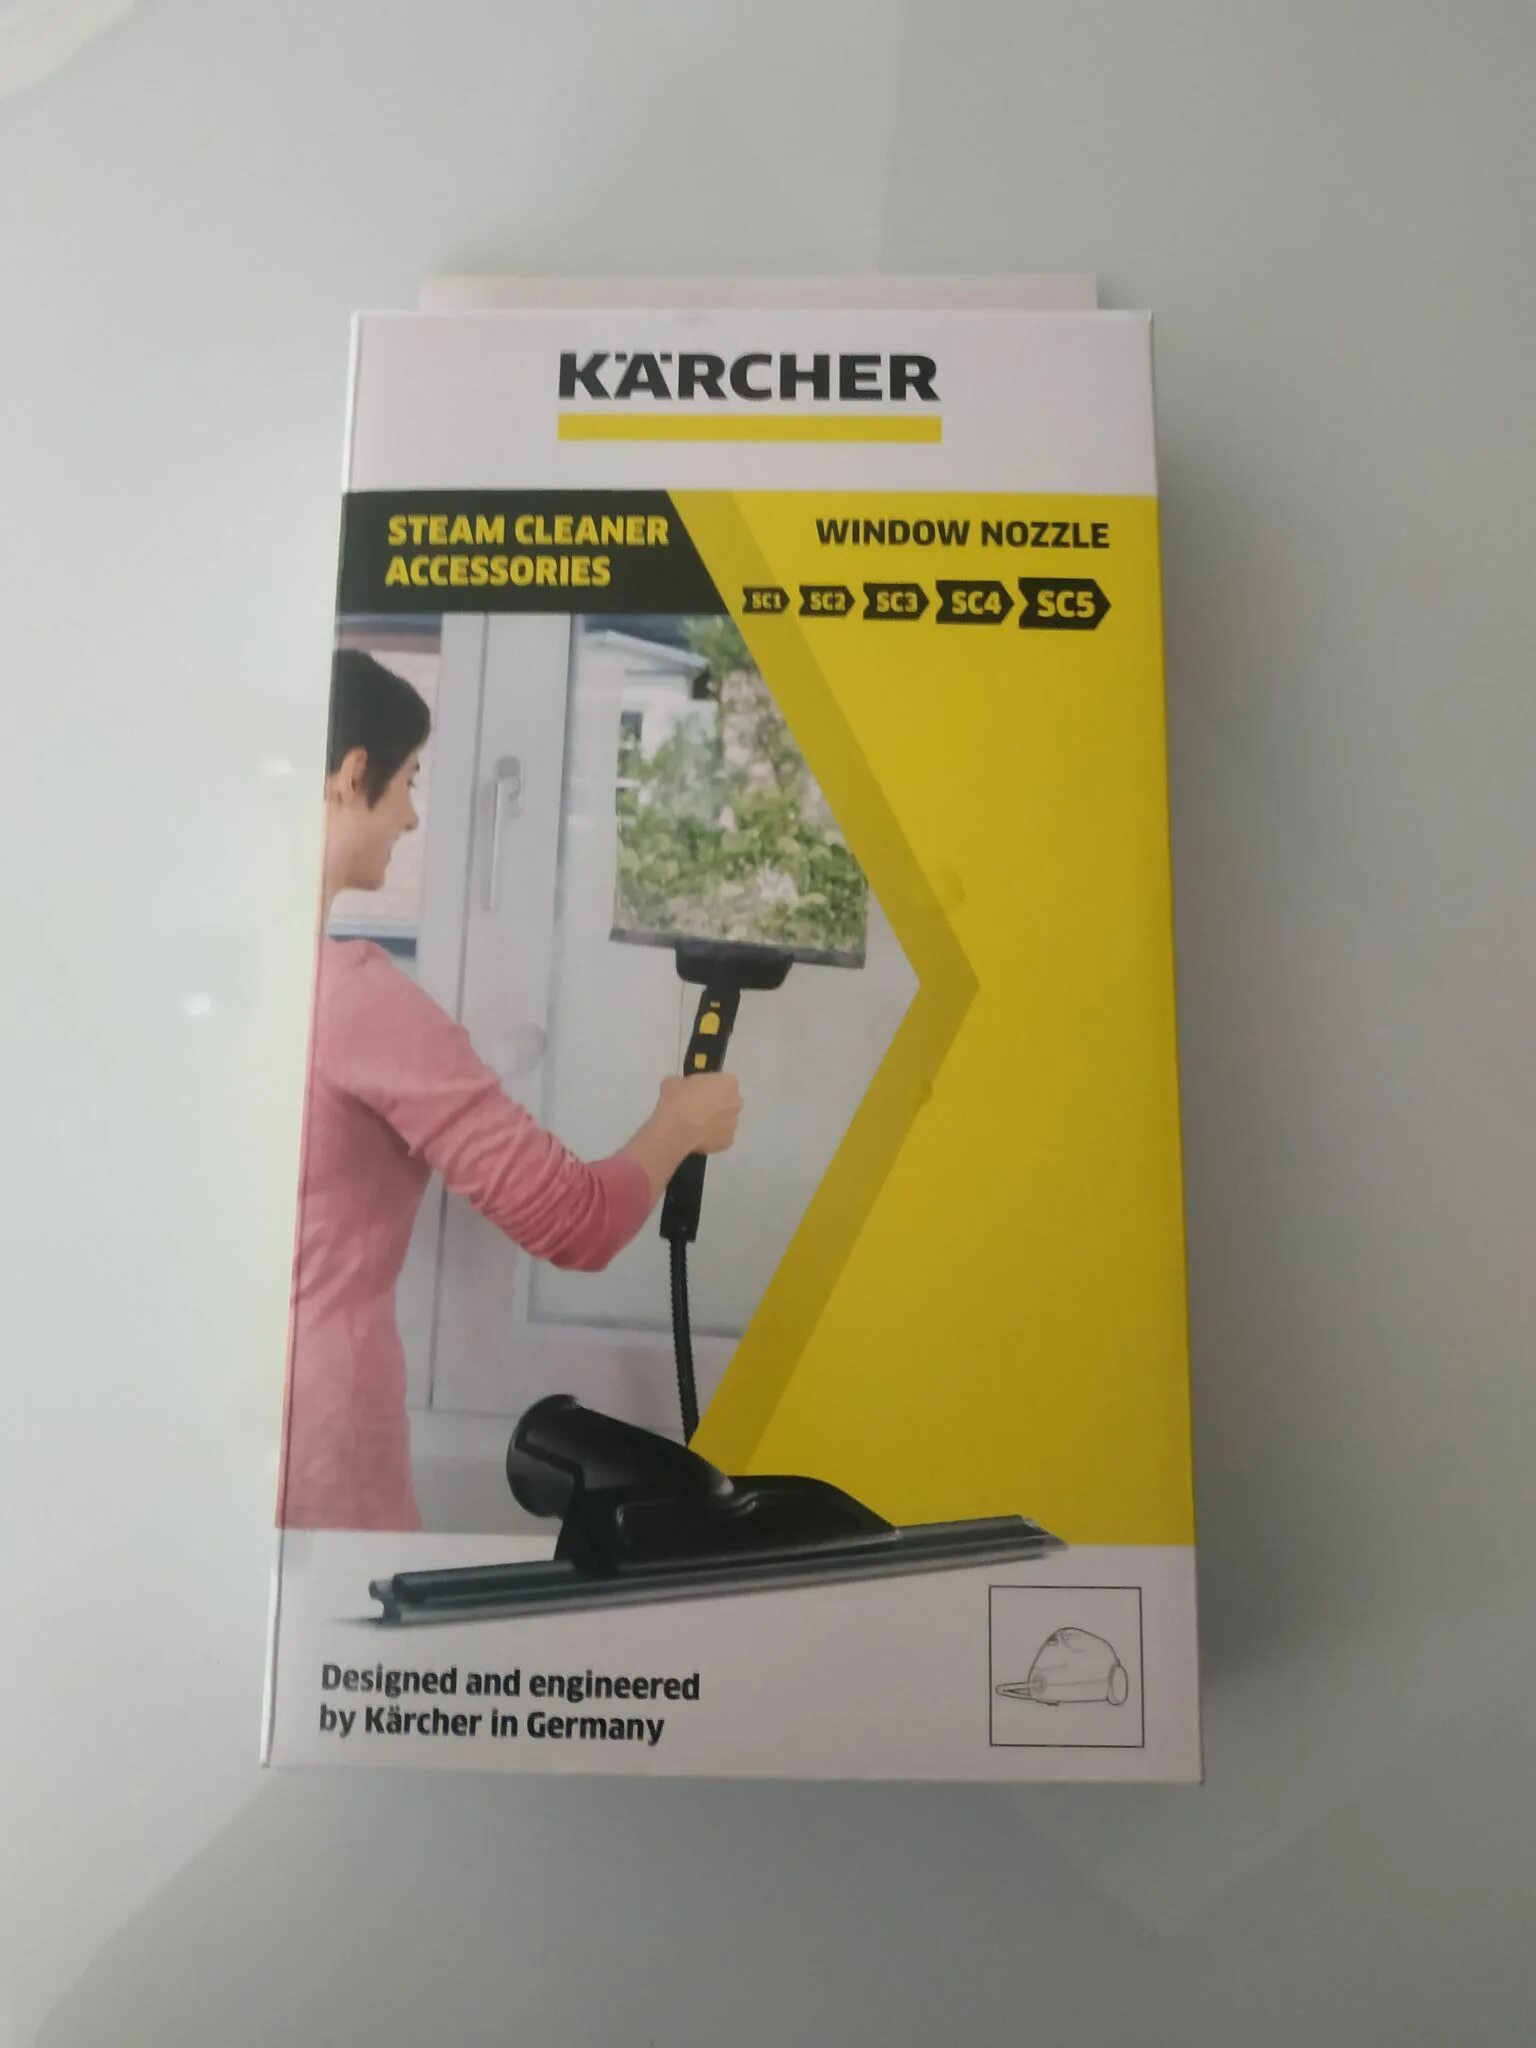 Karcher 2.863 насадка. Насадка для мытья окон 2.863-025.0 Karcher для пароочистителя. 2.863-025.0 Насадка для мойки окон. 2.863-025.0 Керхер.